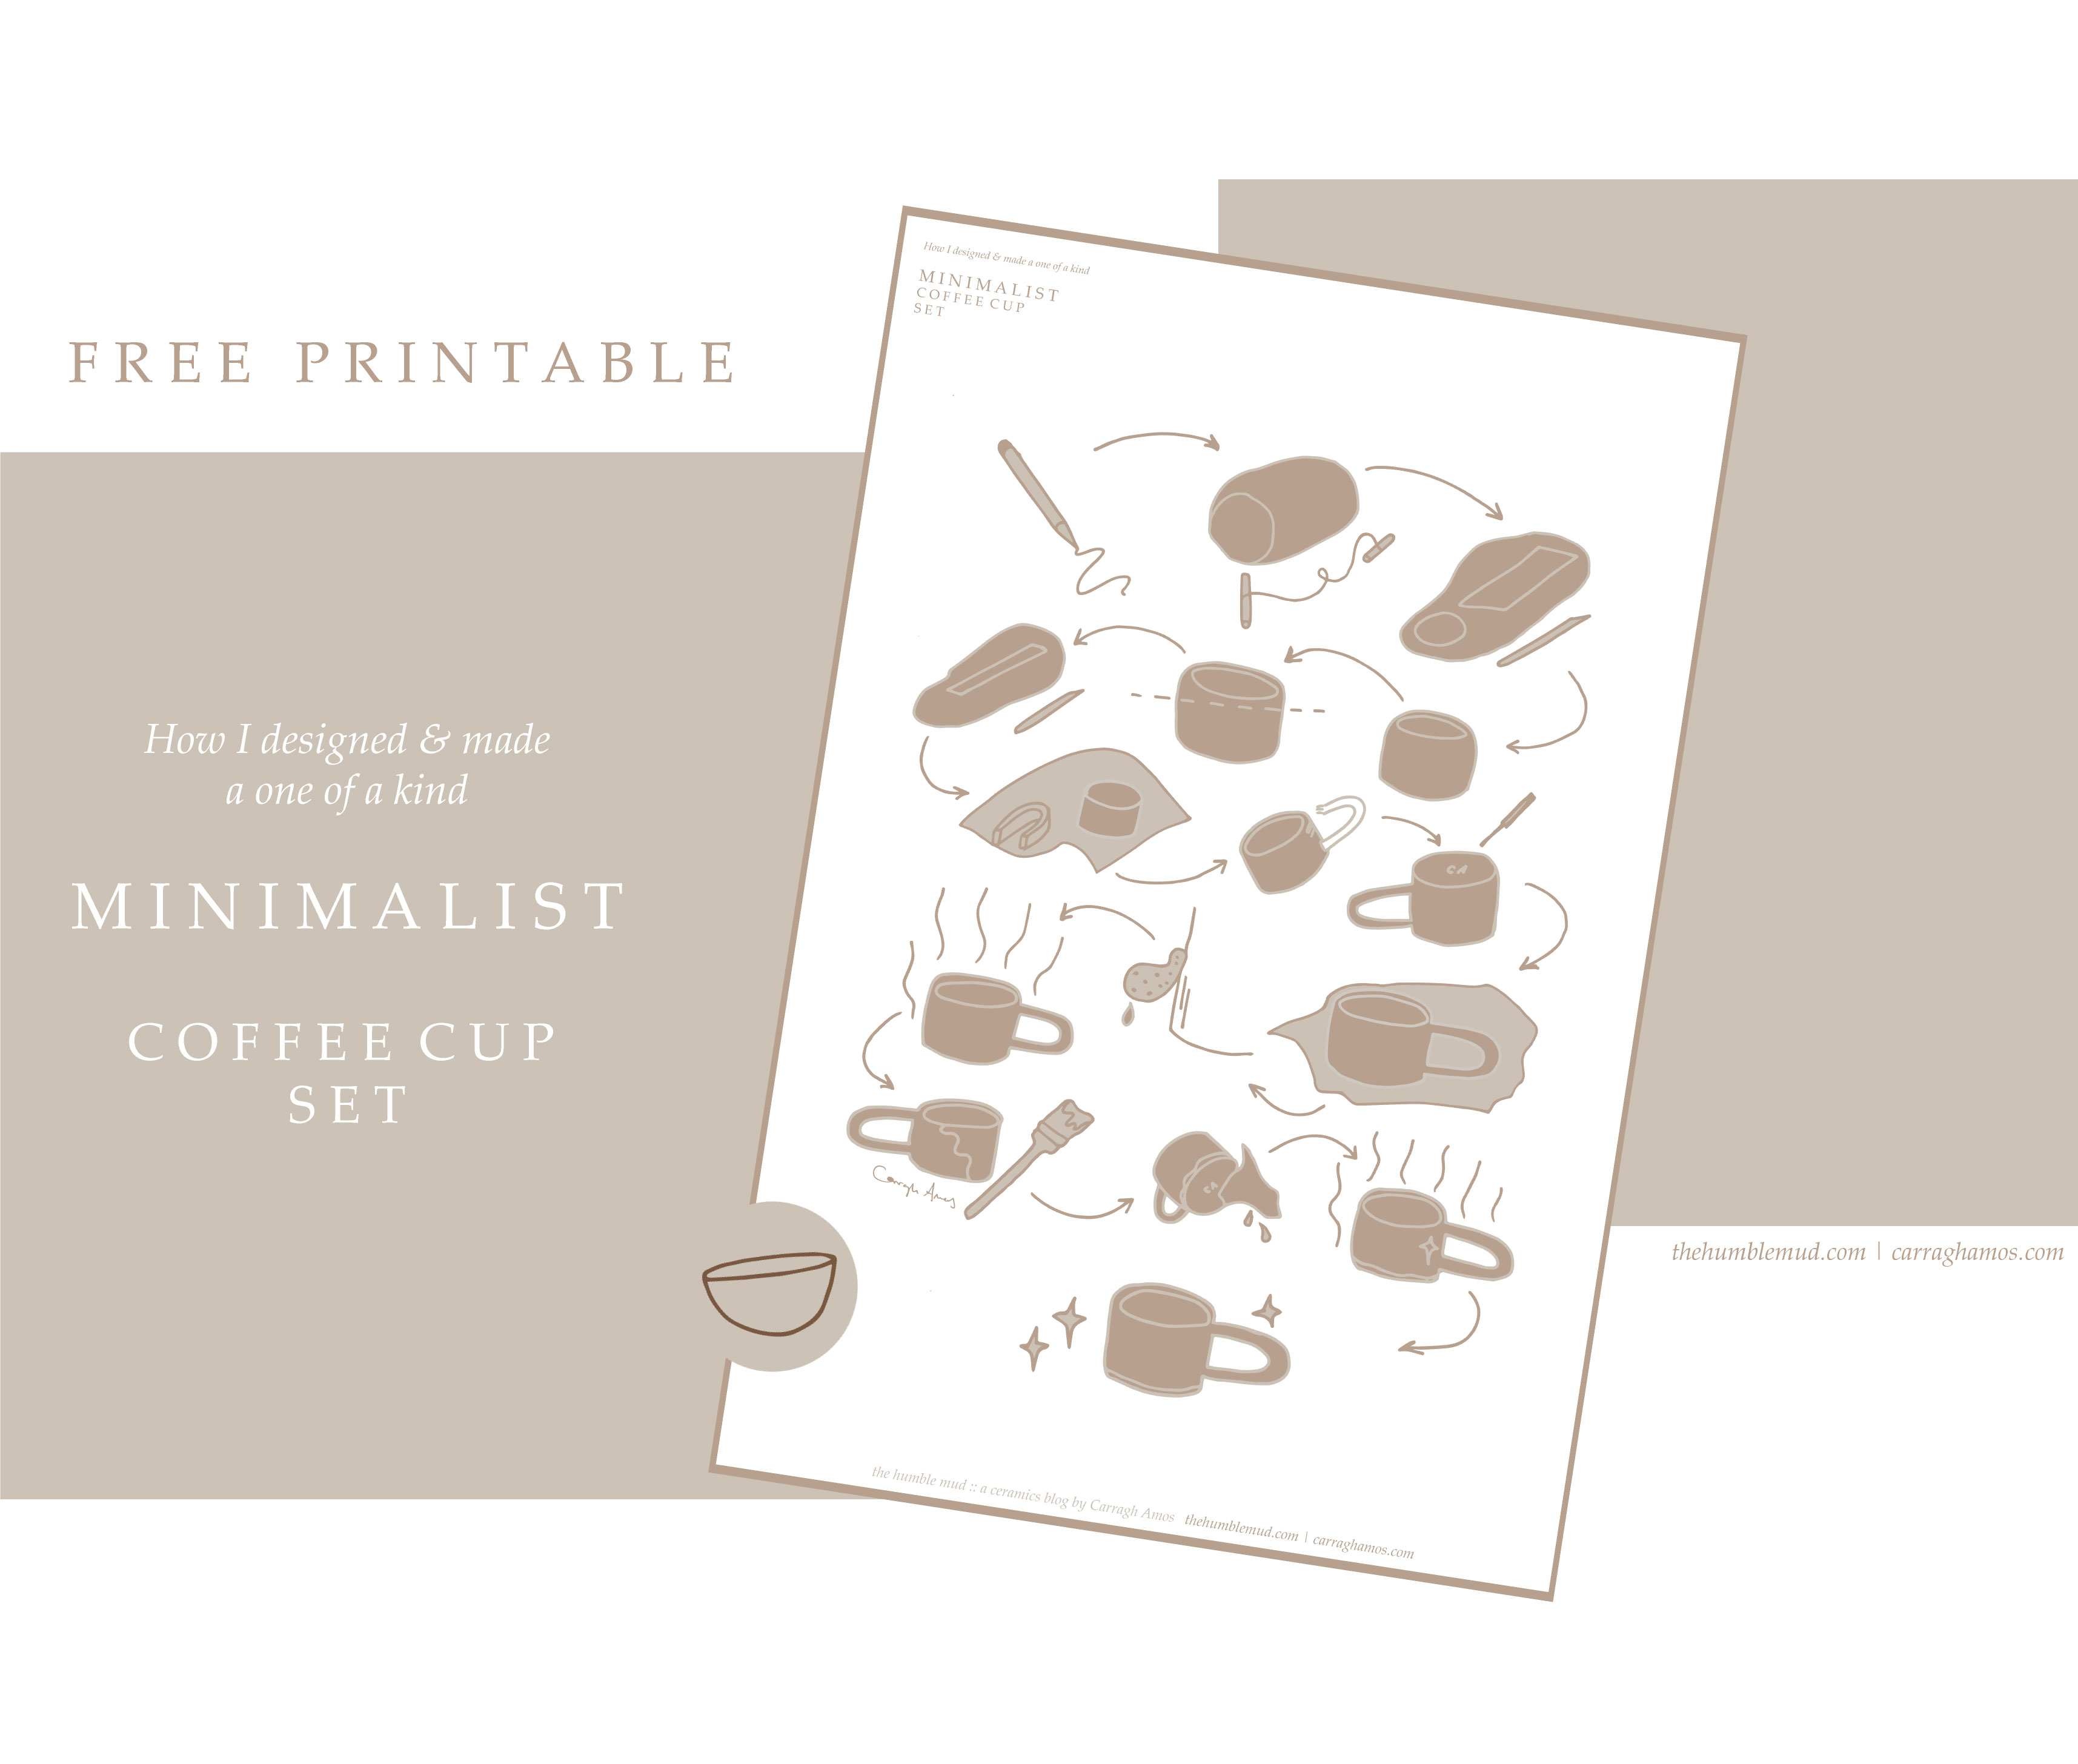 무료 인쇄:수제 슬래브 내장 머그잔을 만드는 방법 무료 인쇄. 일러스트 미니멀리스트 커피 컵 세트 지침.